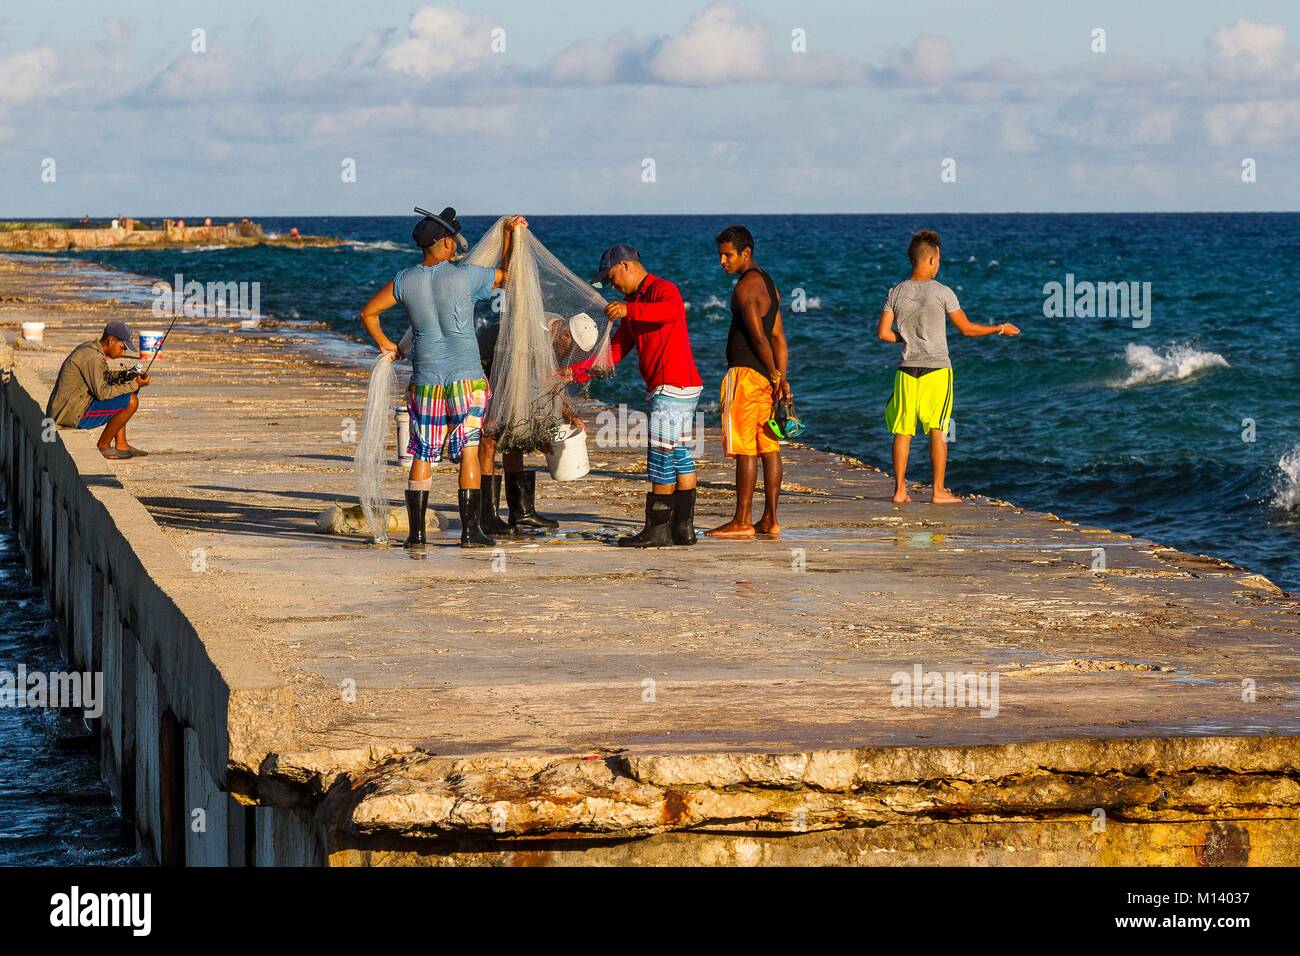 Cuba, péninsule de Zapata, Baie des Cochons, Playa Giron, les pêcheurs sur le quai Banque D'Images